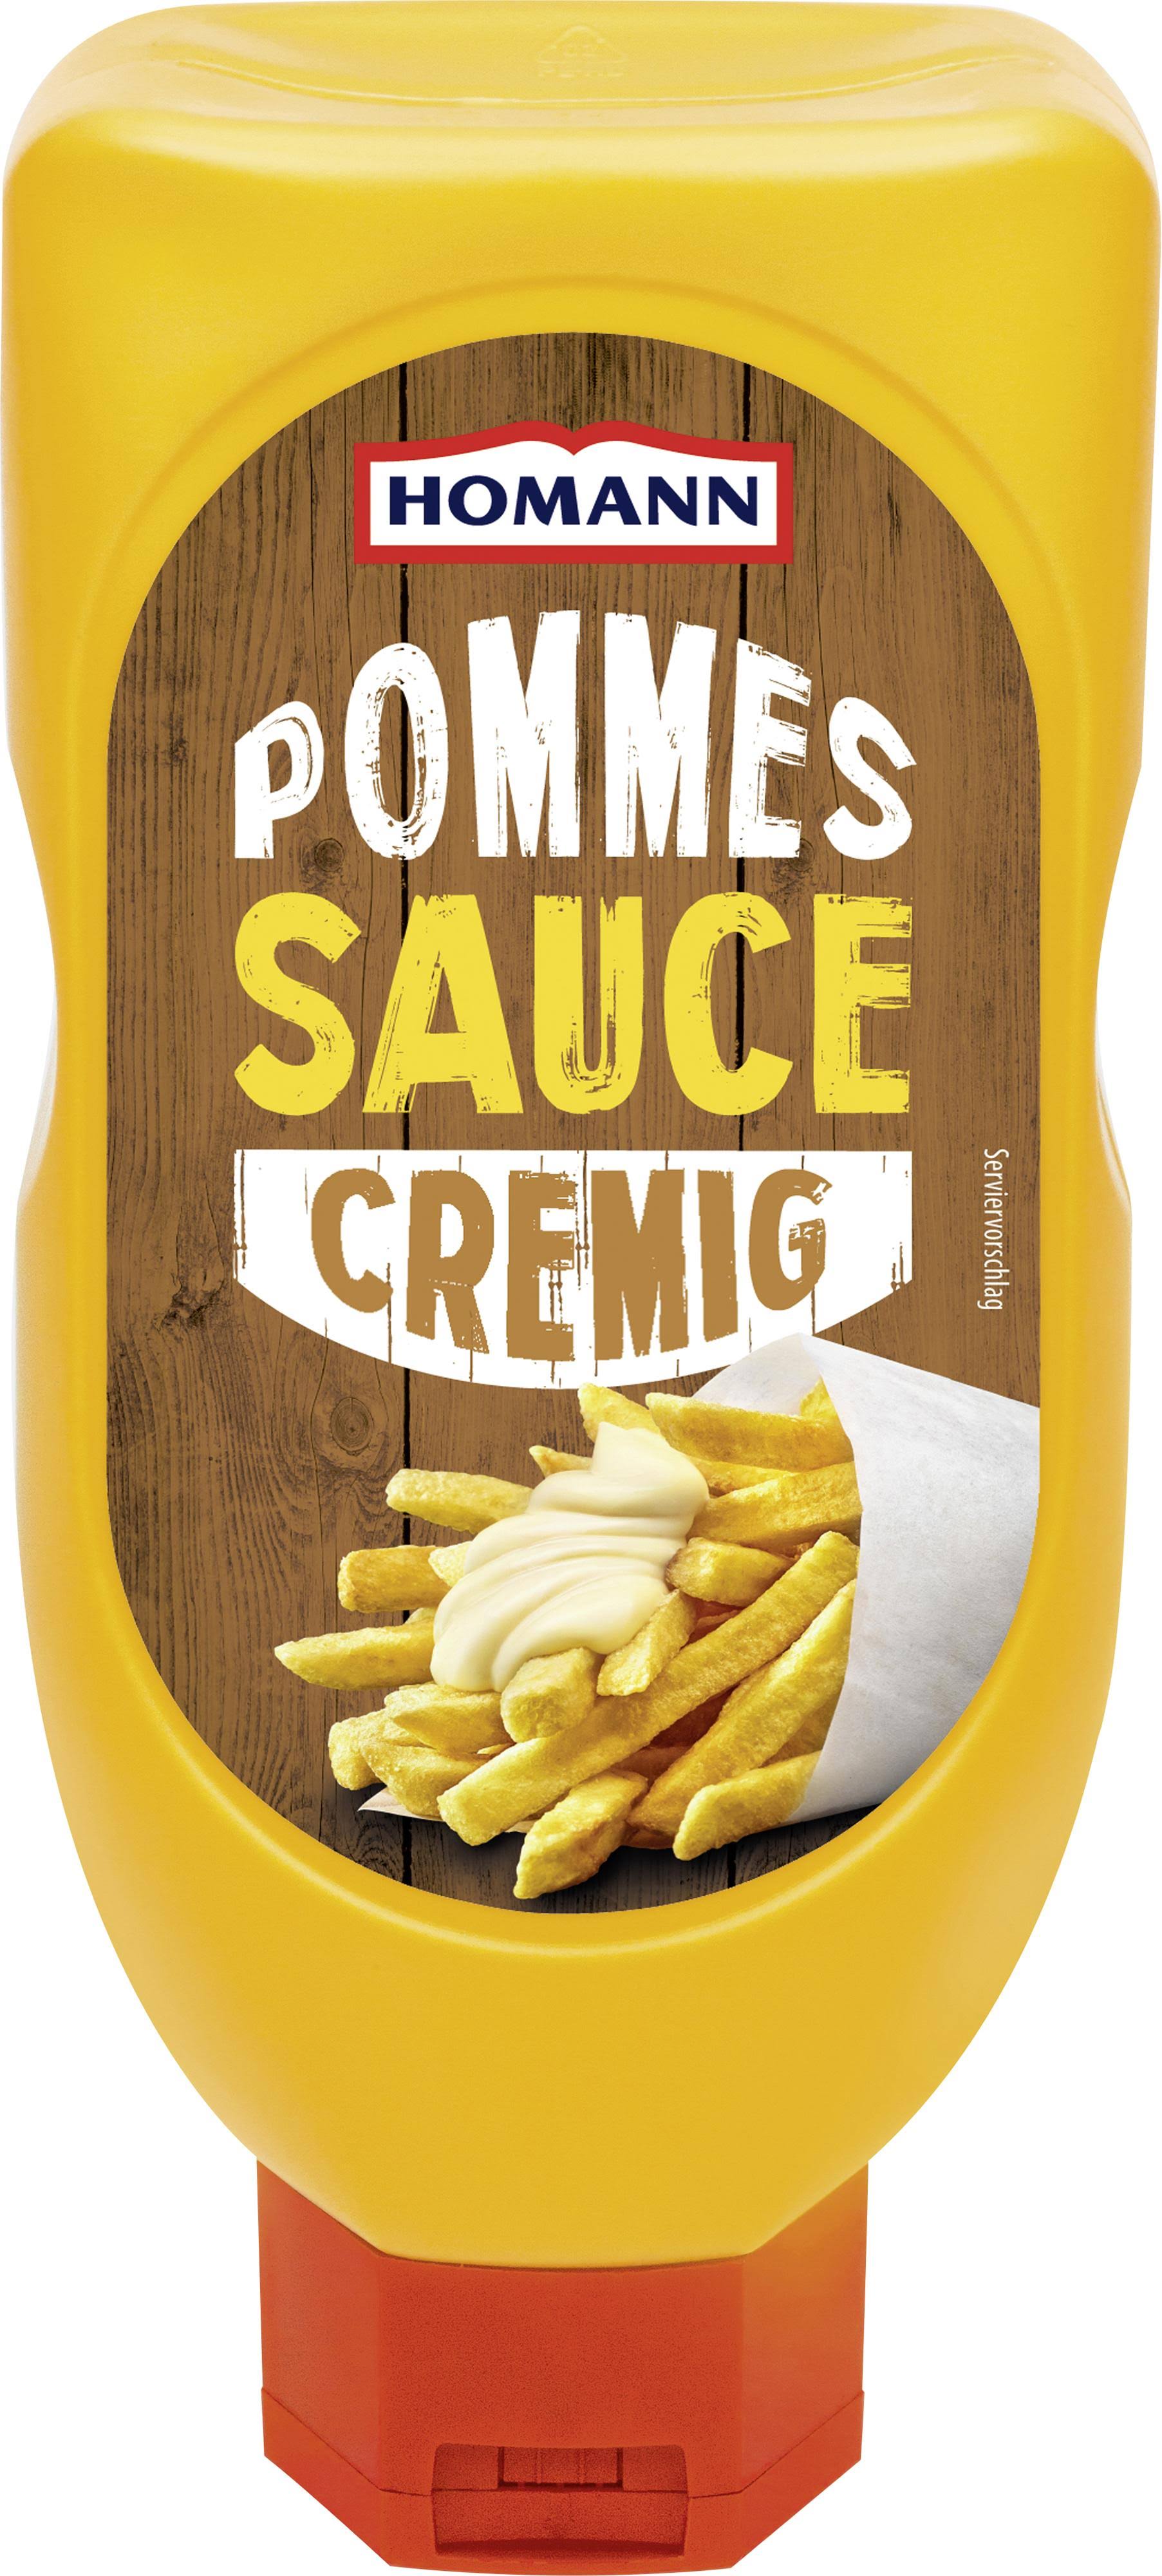 Homann Fries Sauce